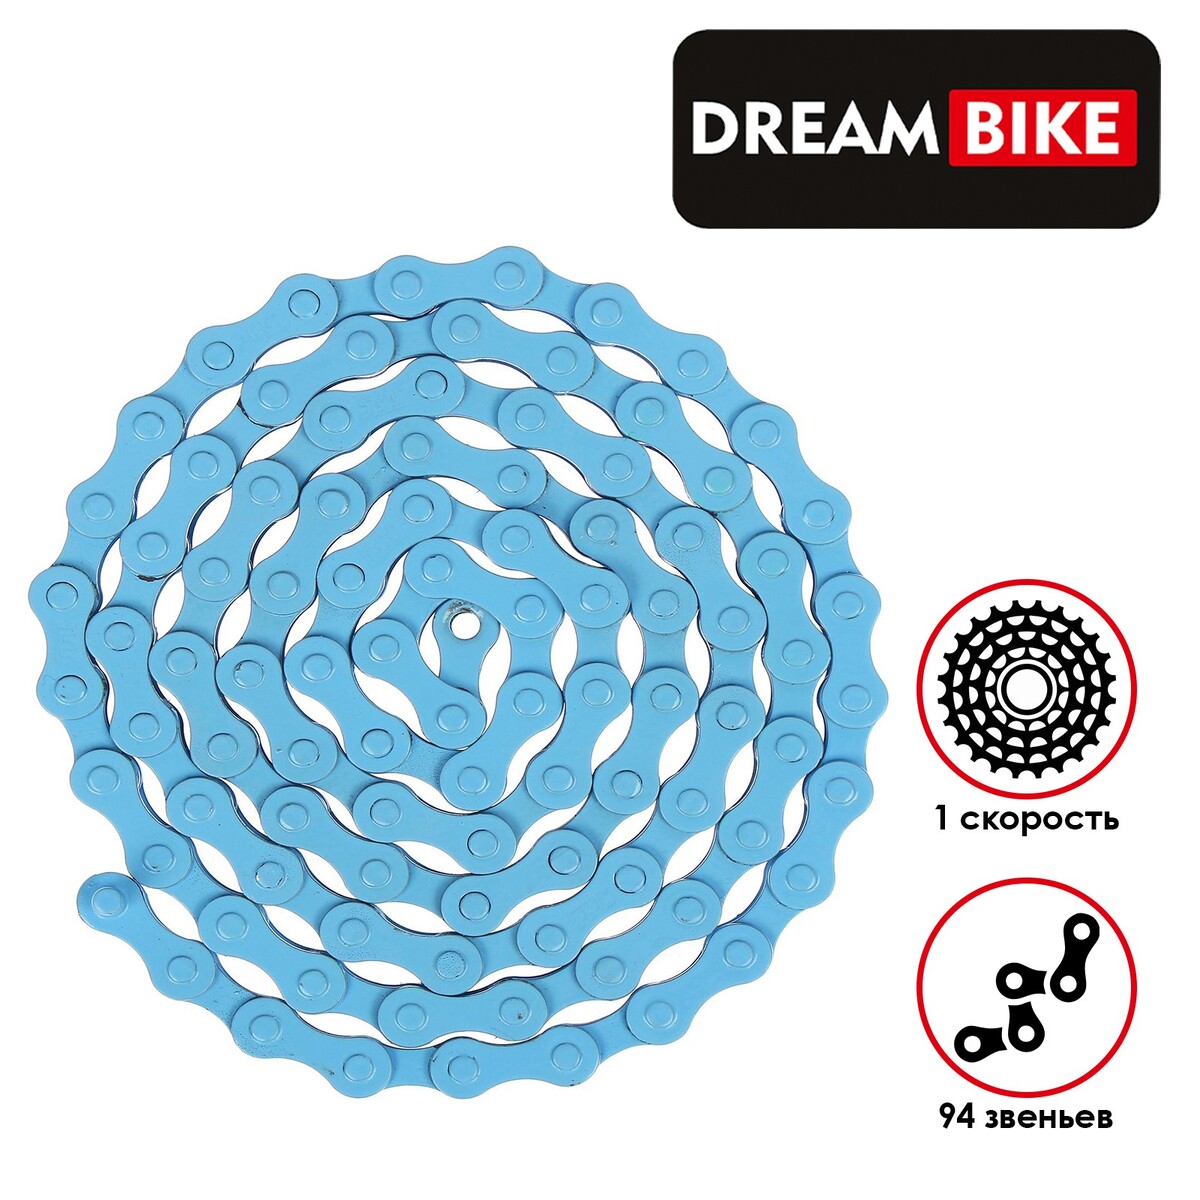 Цепь dream bike, 1 скорость, цвет синий критическая цепь том 30